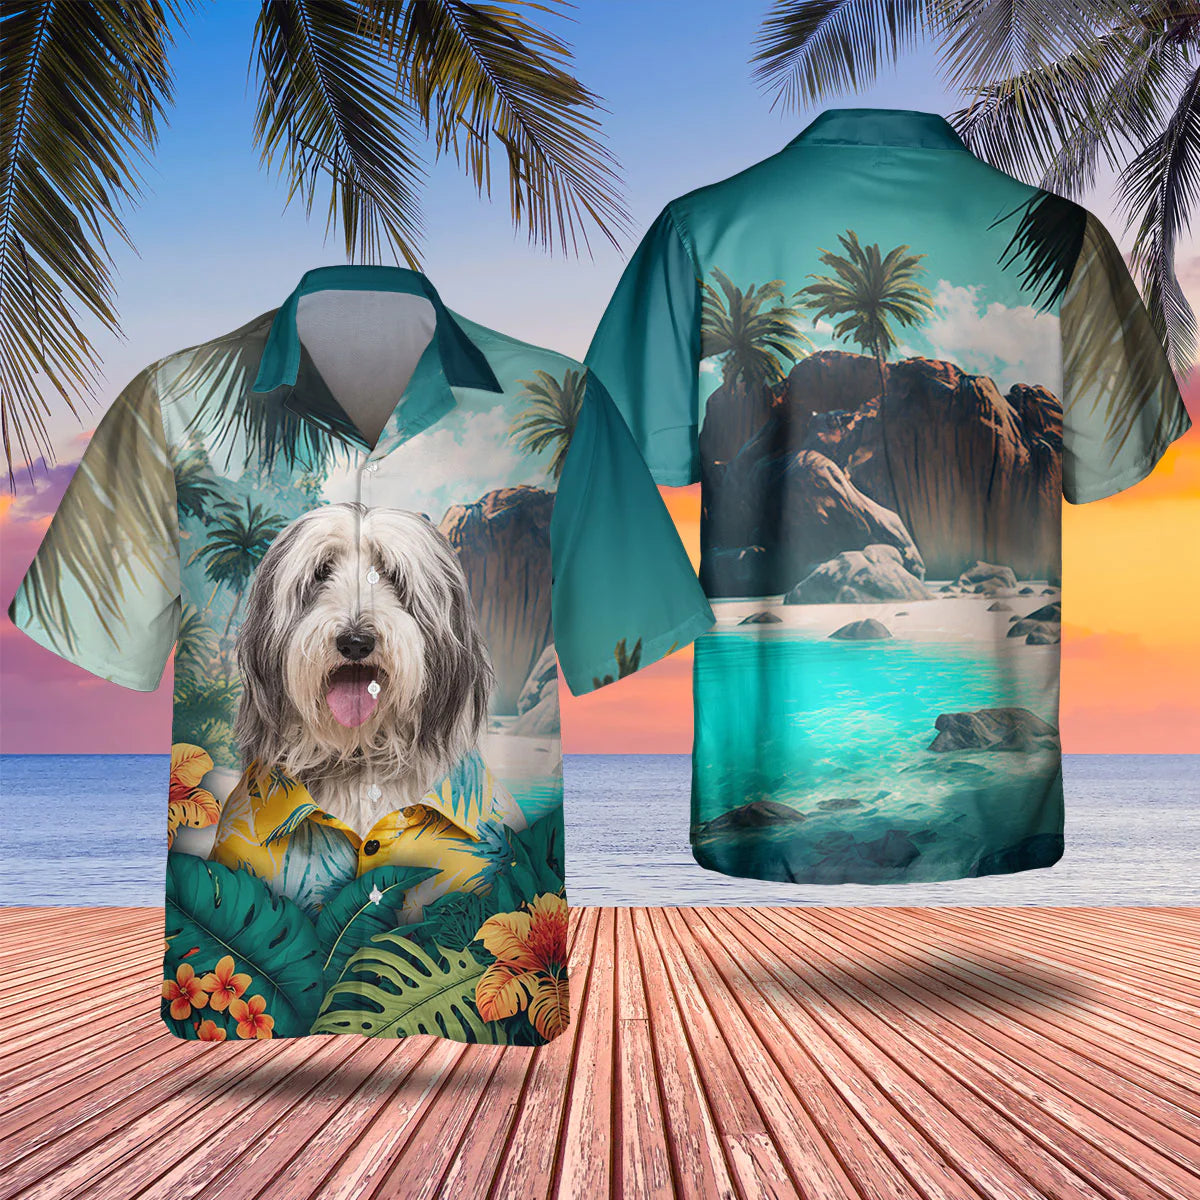 Bearded Collie - 3D Tropical Hawaiian Shirt